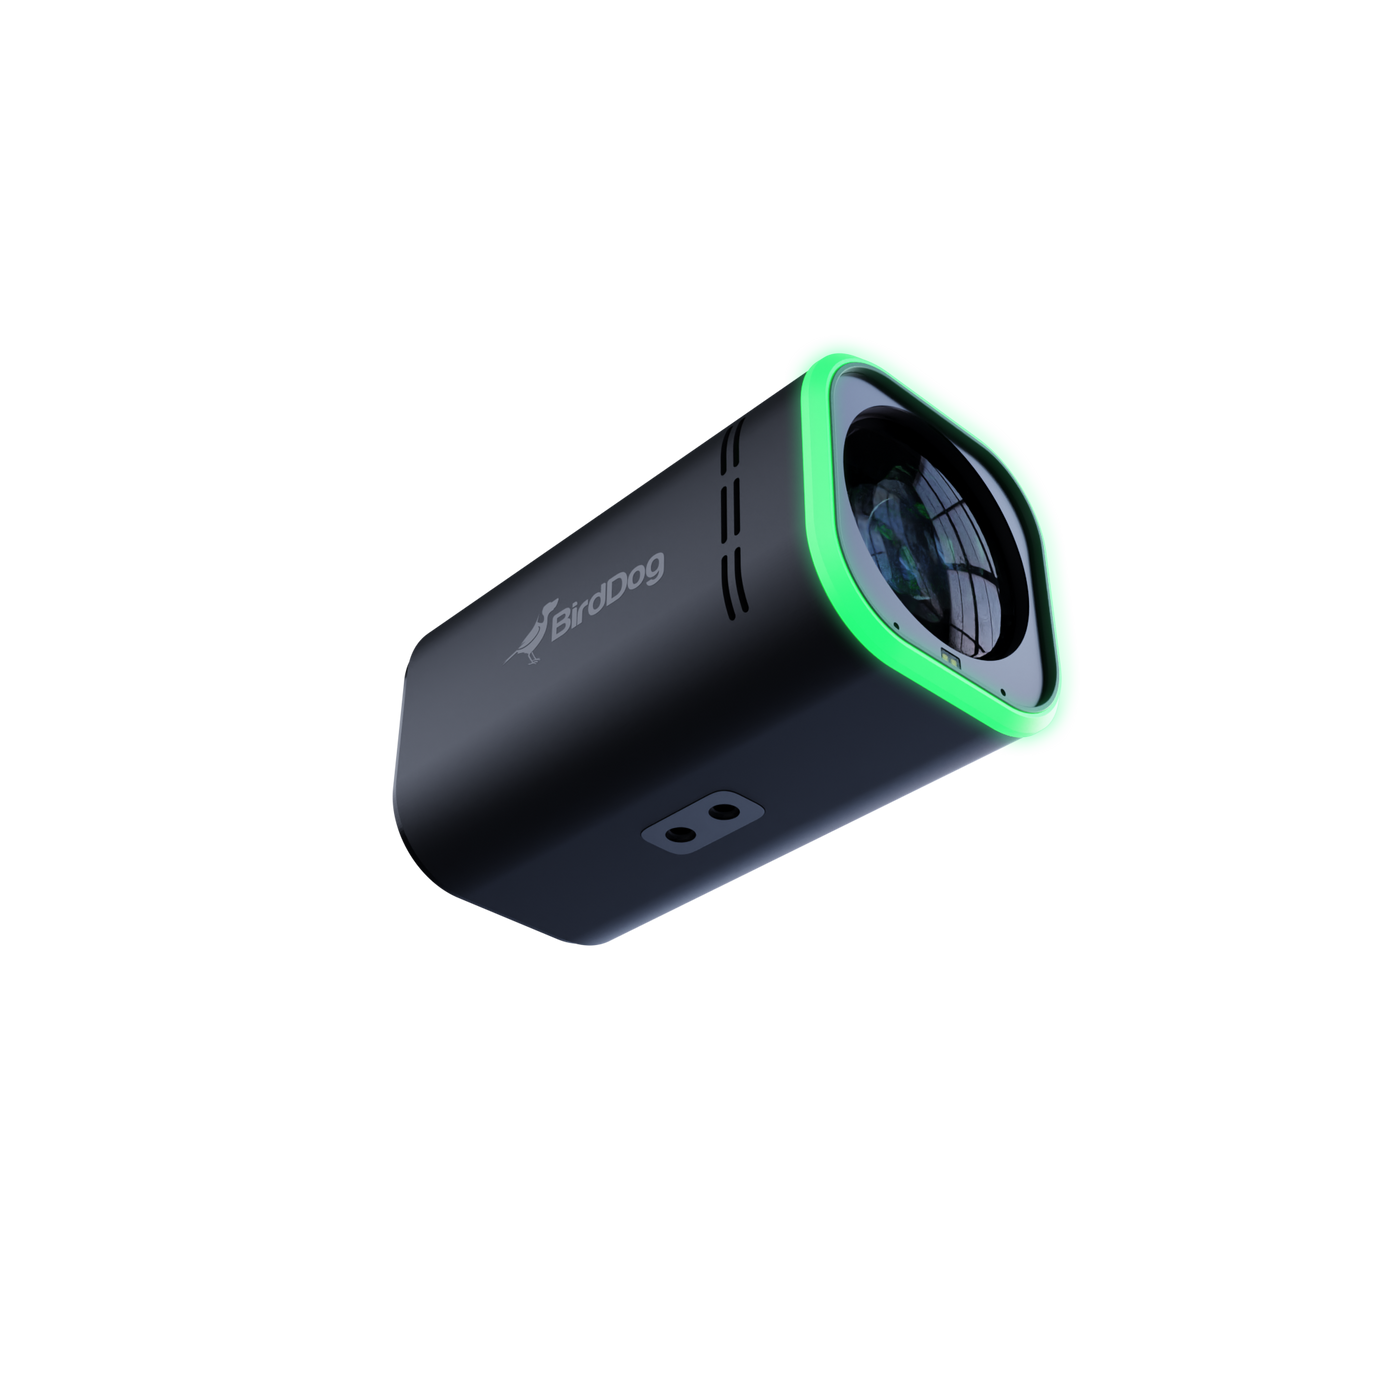 BirdDog MAKI Ultra 4K 12x Zoom Box Camera (Black)